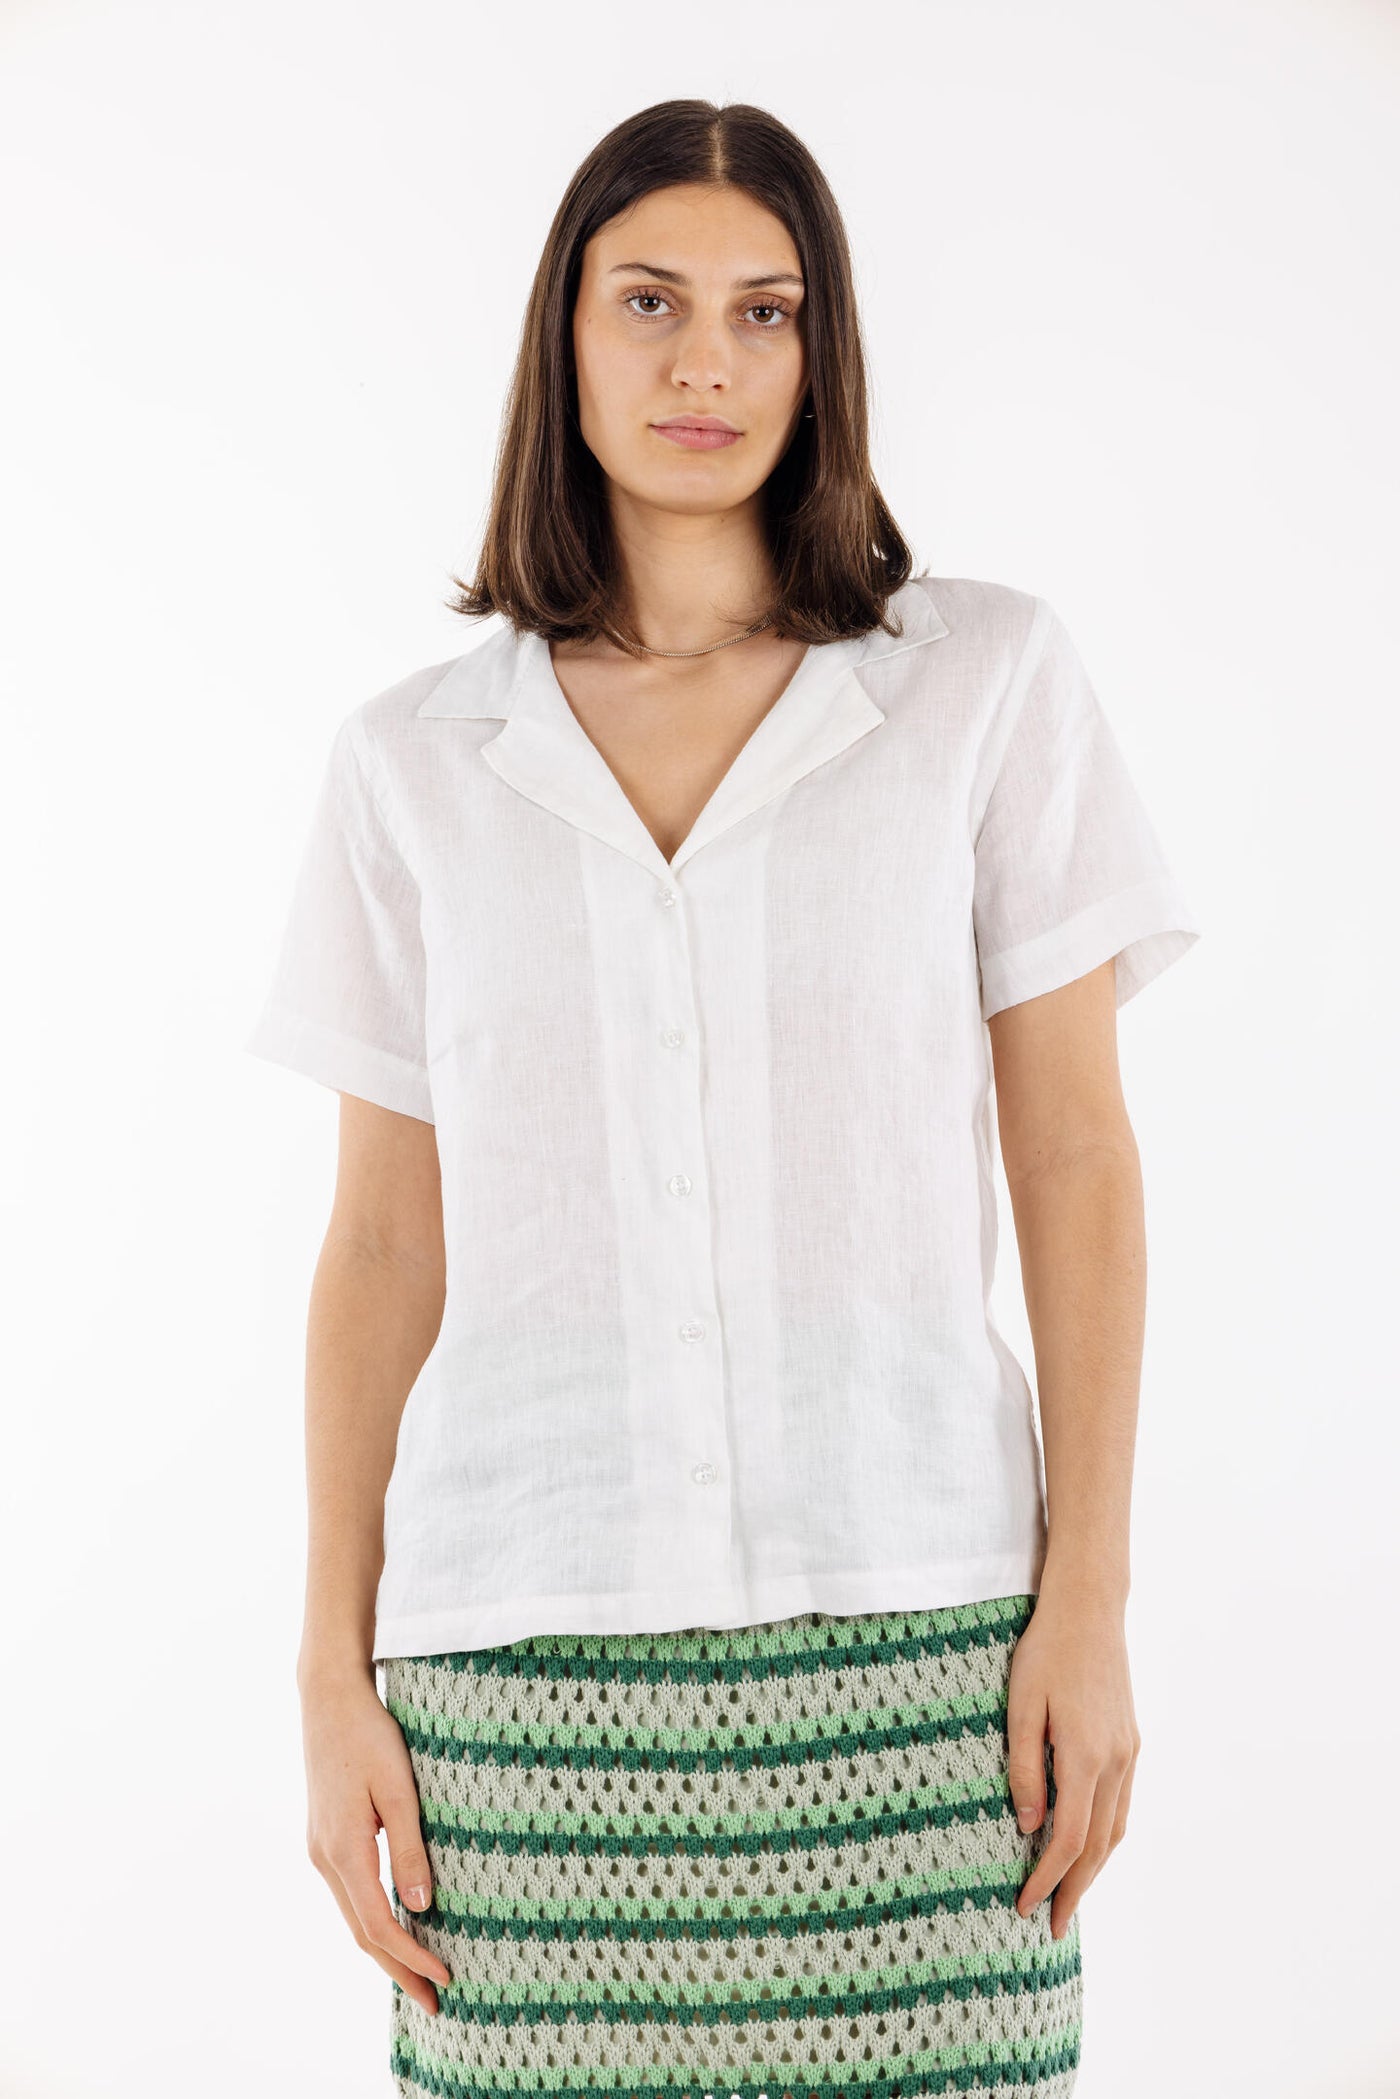 Murni Shirt White